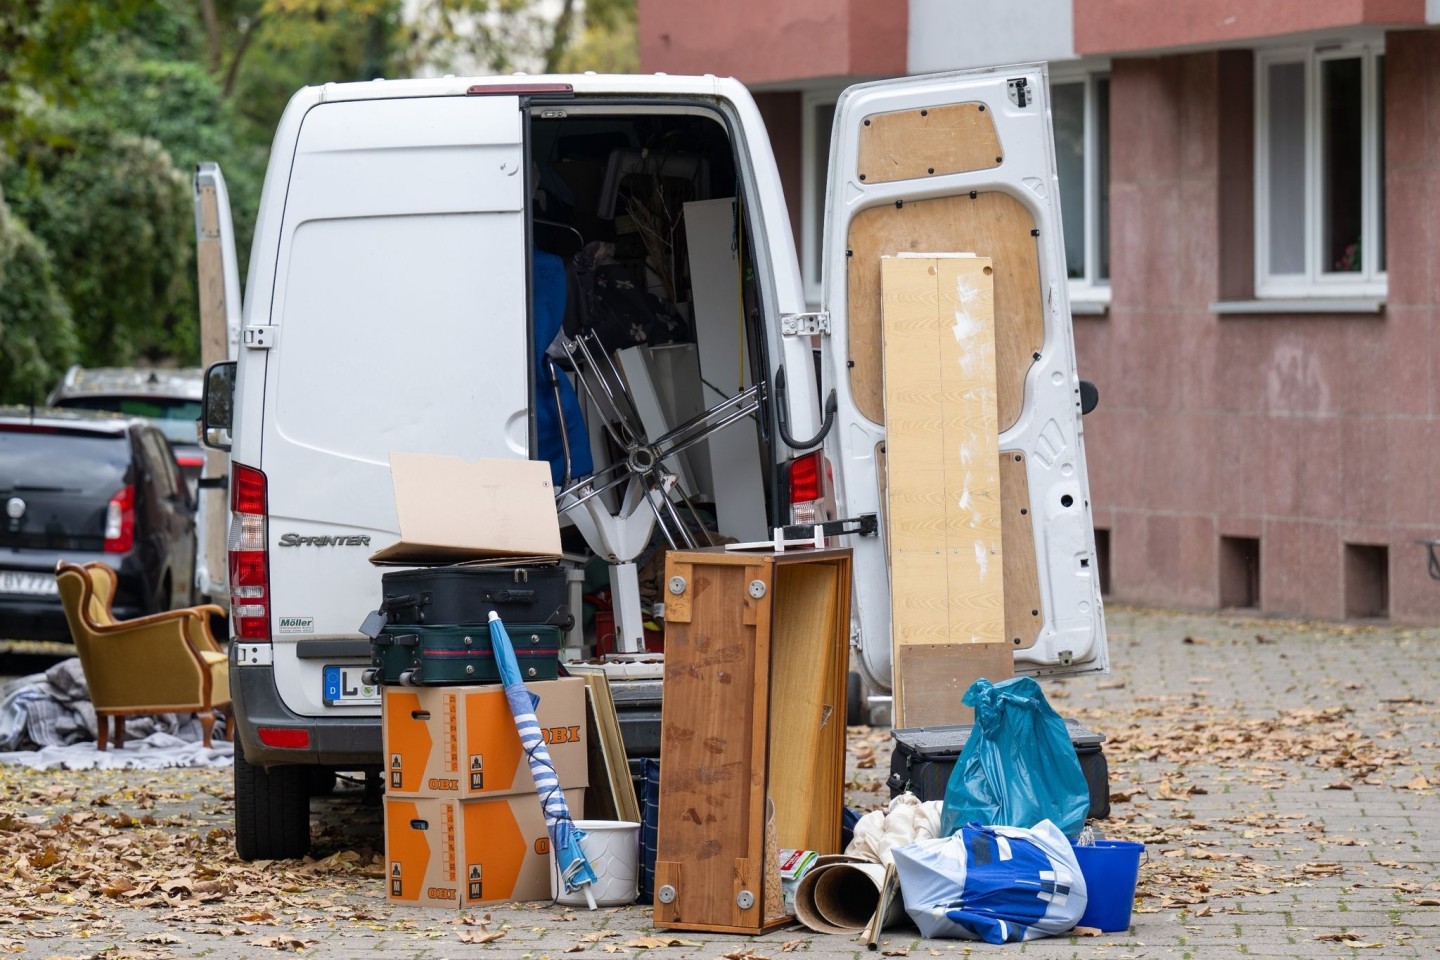 Möbel und Umzugskartons stehen vor einem Transporter an einem Wohnhaus in Leipzig. (Symbolbild)